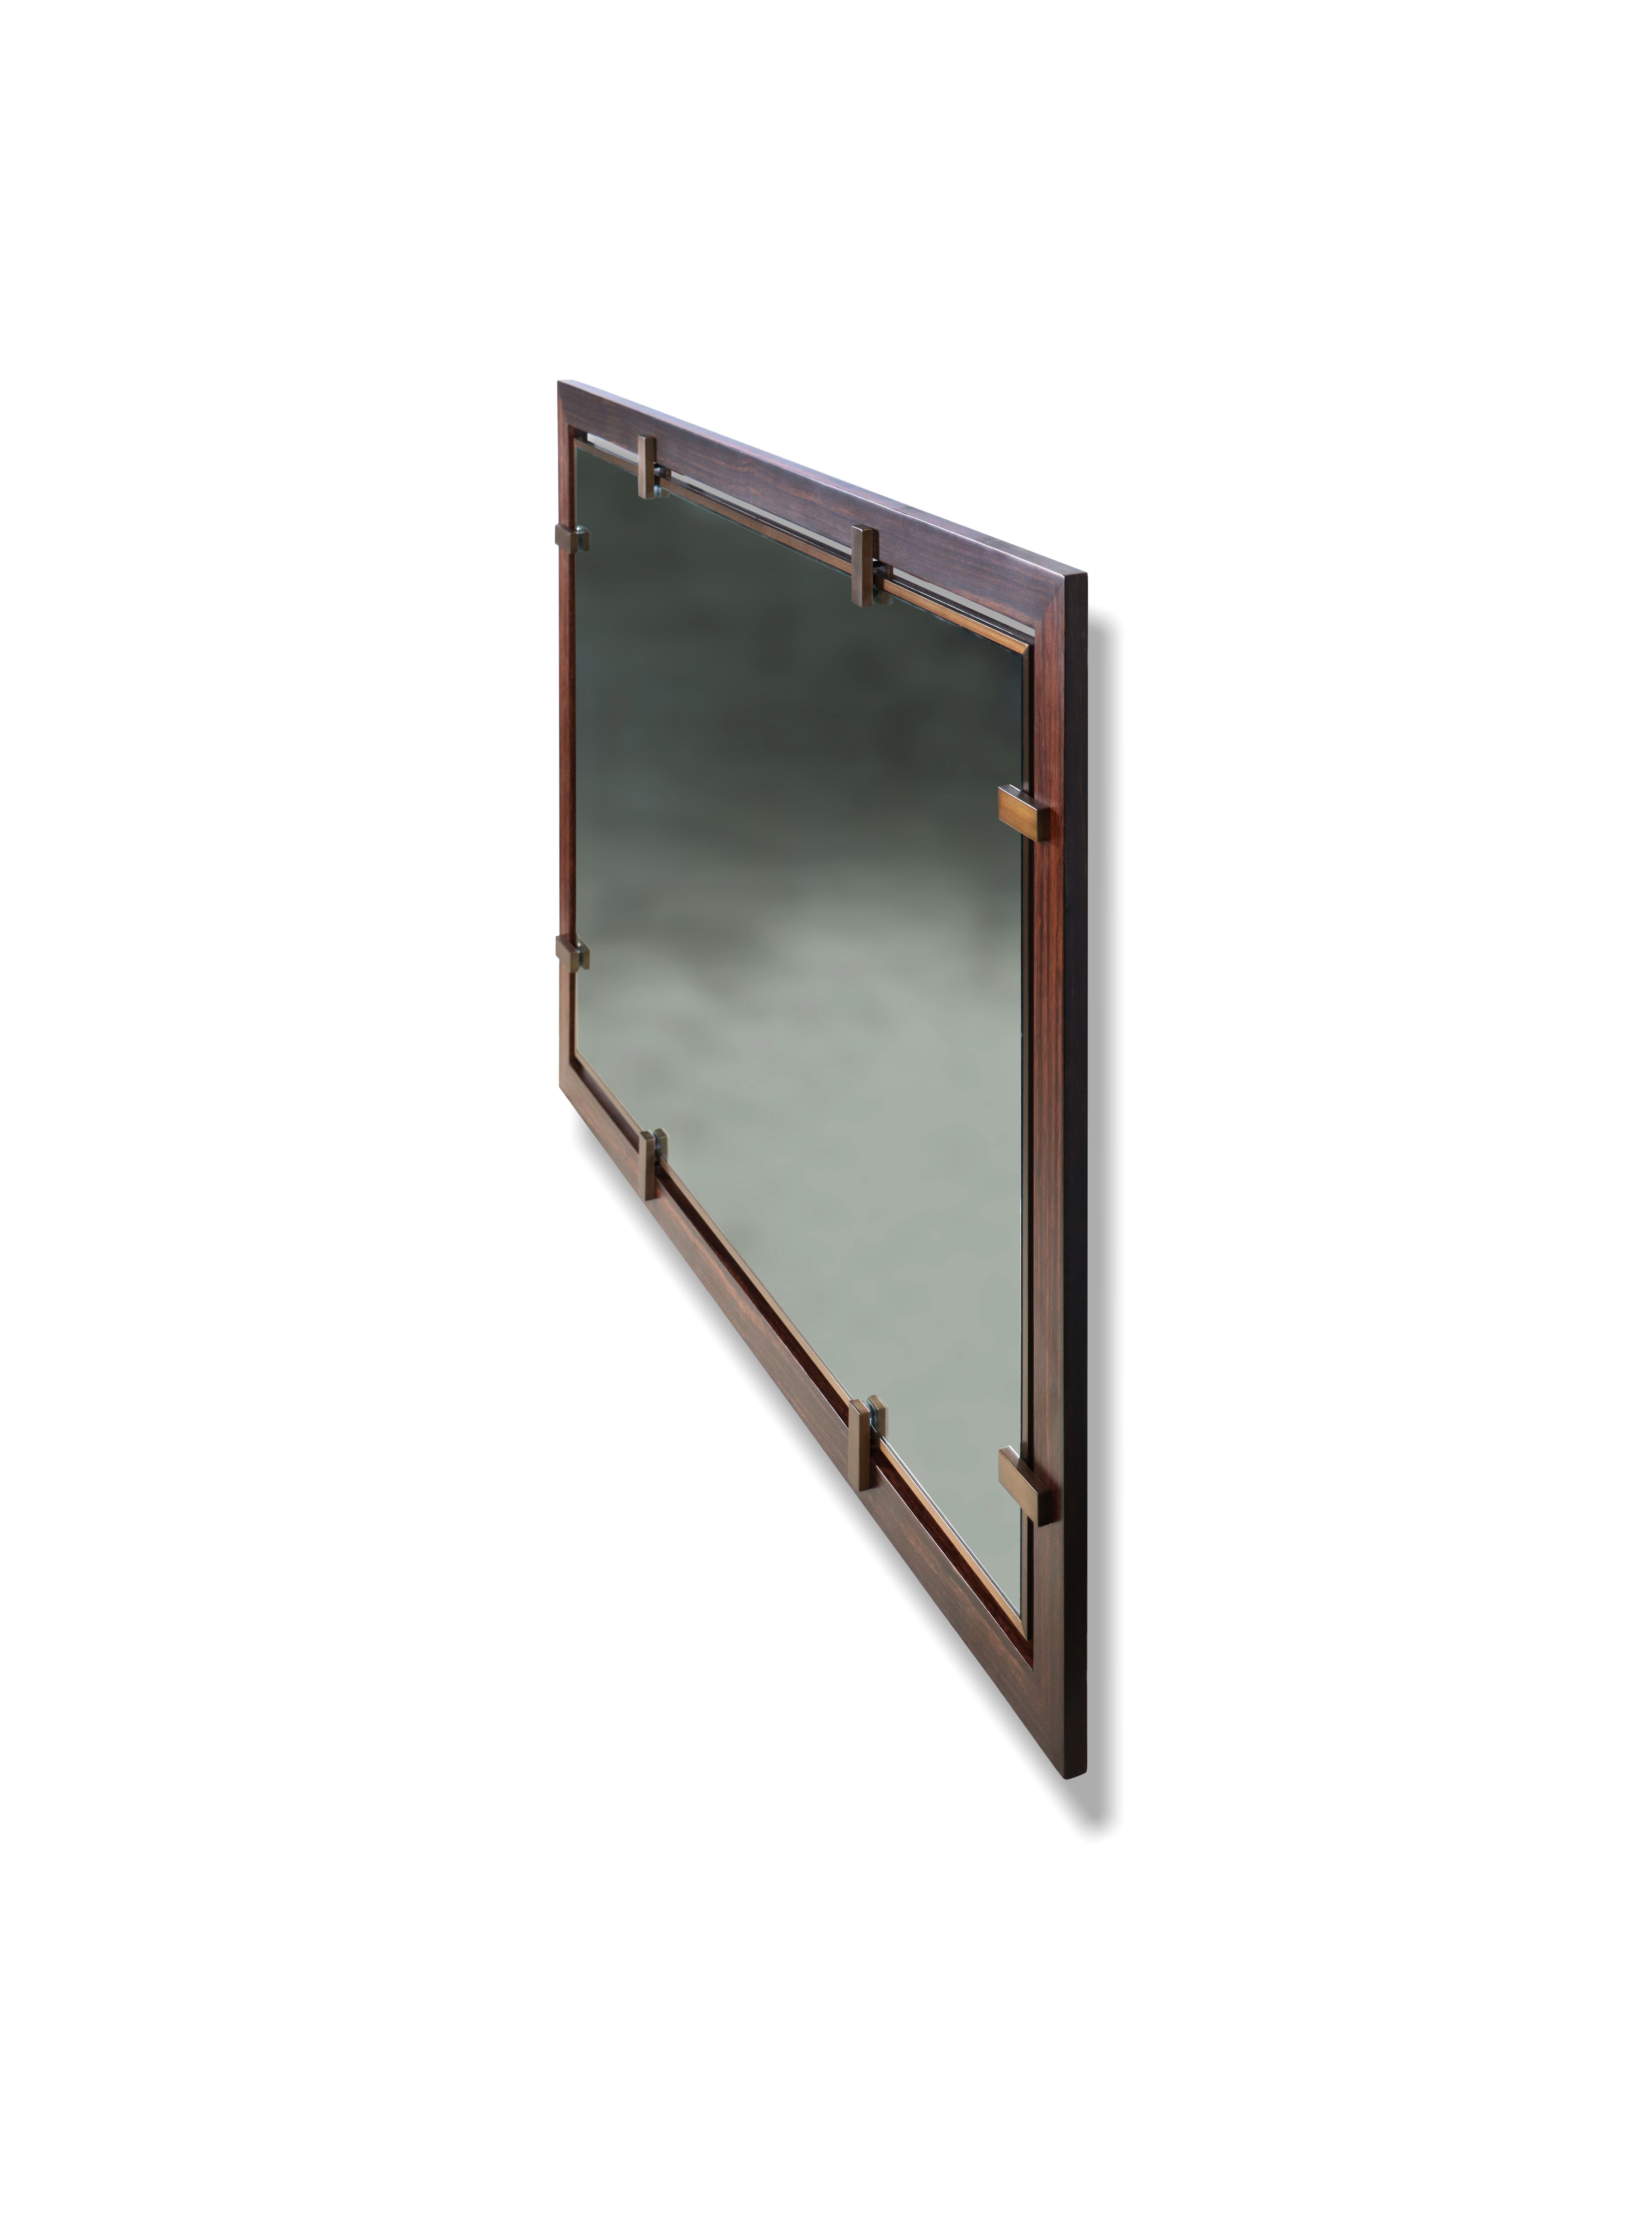 Der Spiegel Marco besteht aus einem schwebenden Glas mit Bronzebeschlägen. Abgebildet in Makassar-Ebenholz. Kann auf Bestellung in der Größe, Form, dem Material und der Ausführung Ihrer Wahl und auch als Bodenspiegel hergestellt werden. Erhältlich